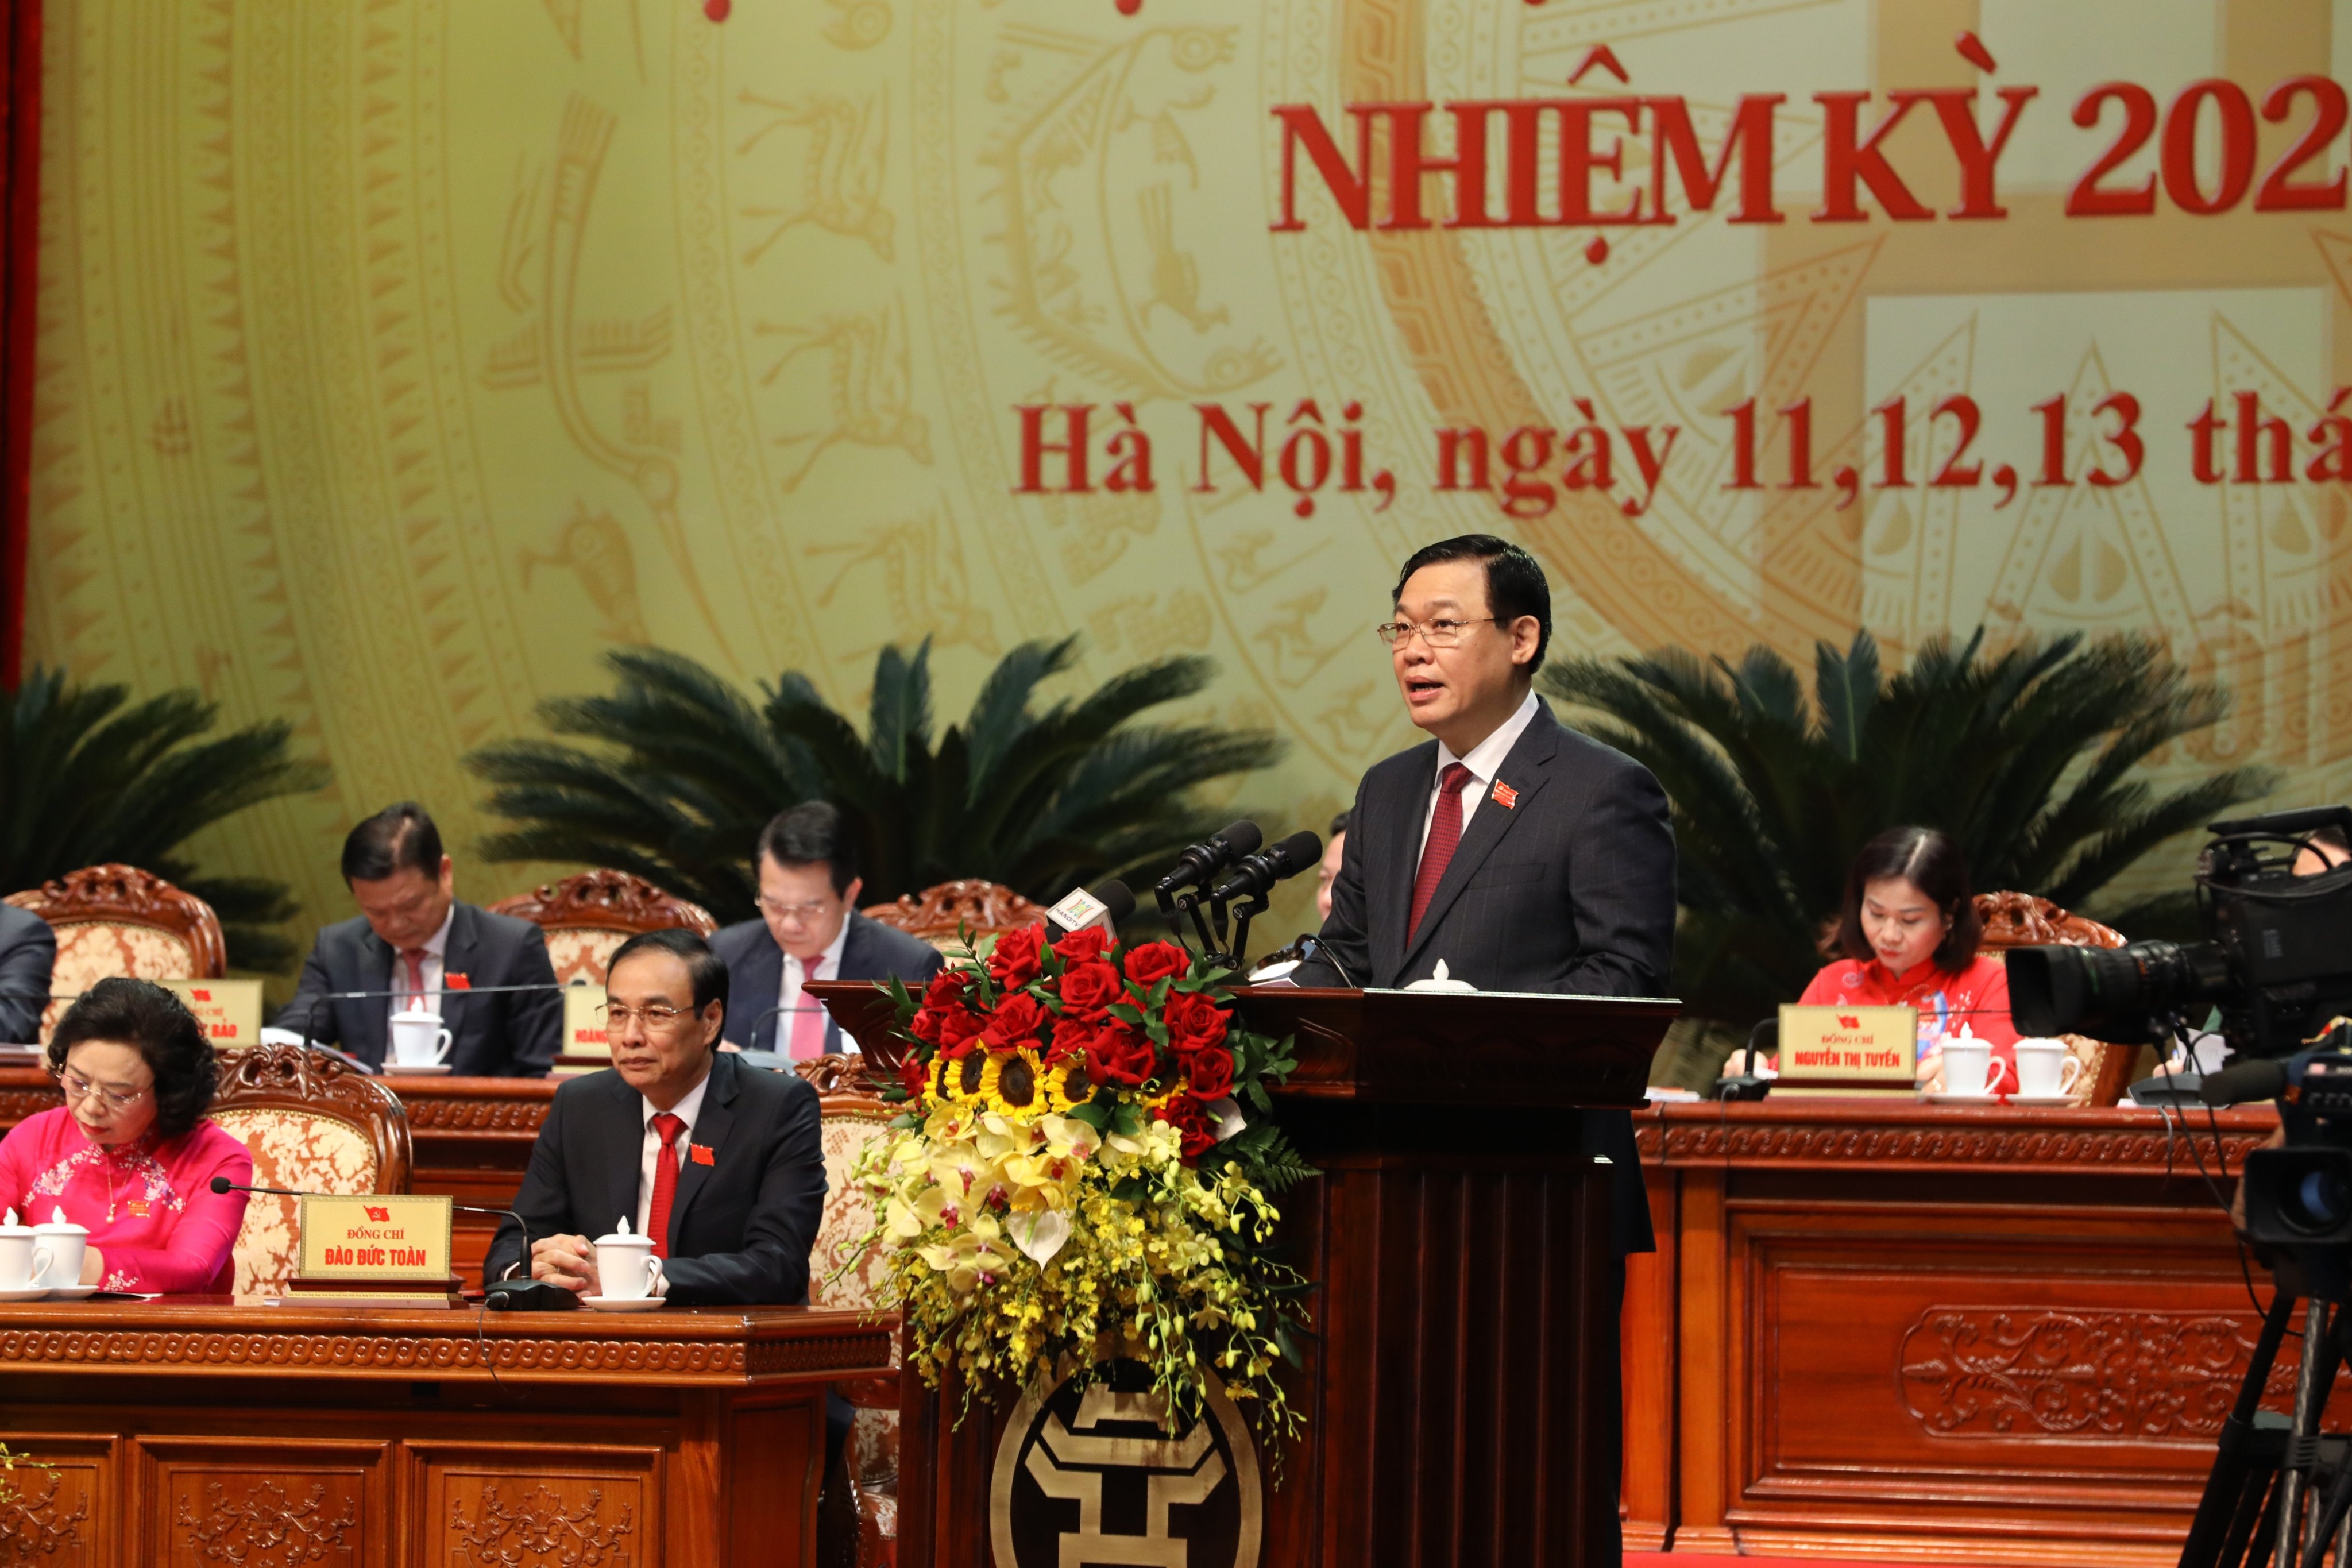 Đồng chí Vương Đình Huệ tái đắc cử Bí thư Thành ủy Hà Nội với số phiếu cao tuyệt đối 1